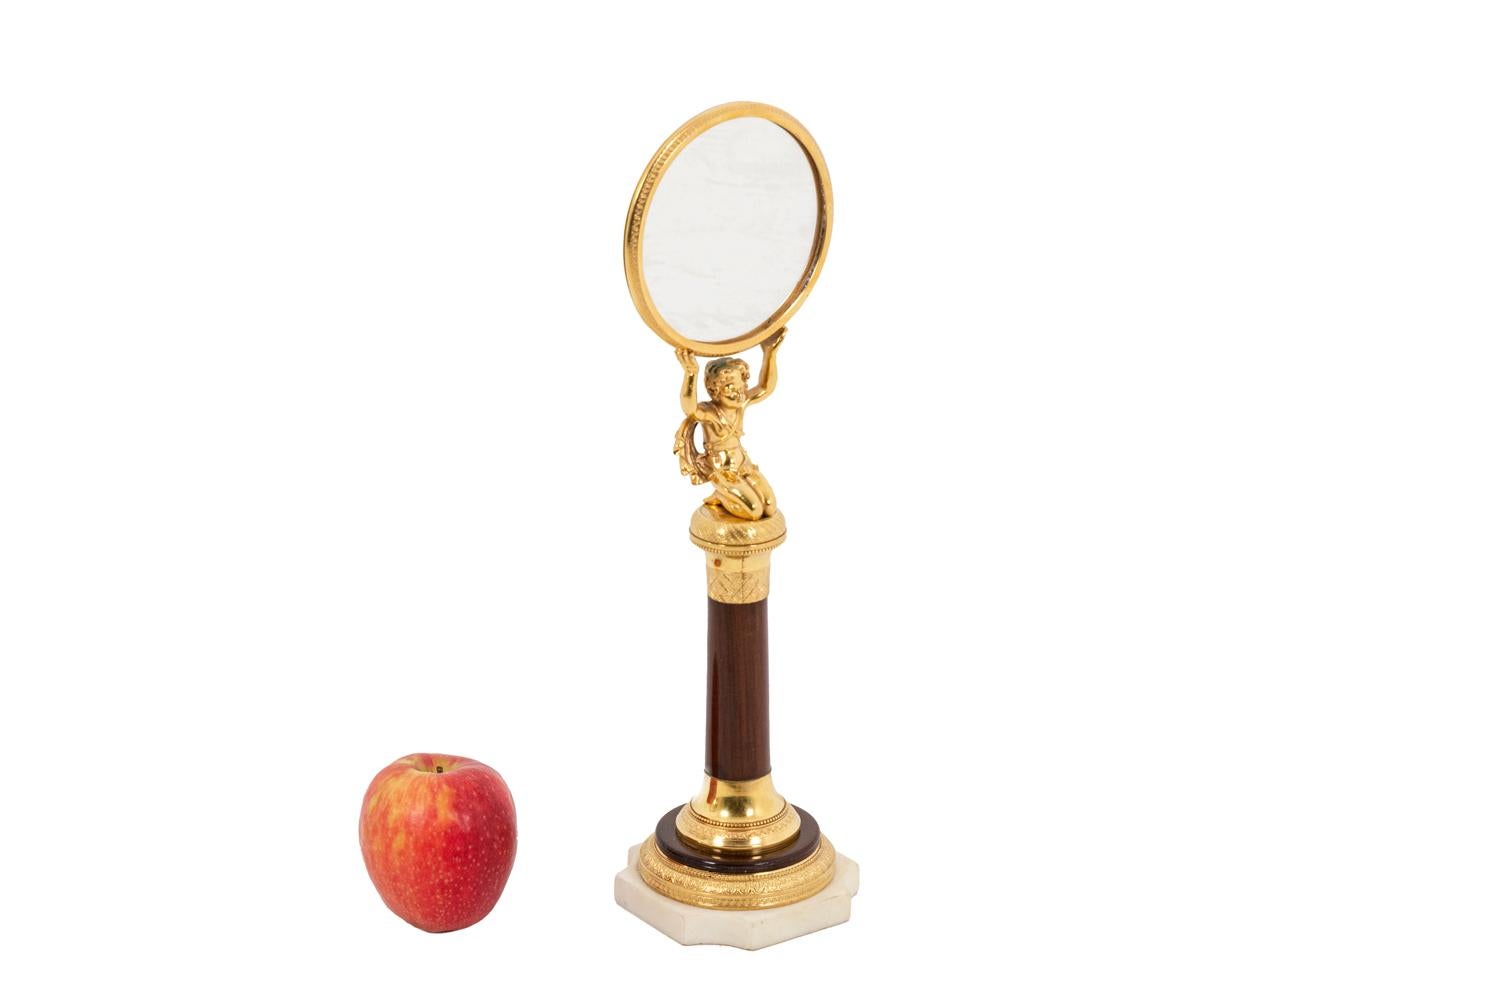 Petit miroir de forme ovale en bois de rose et bronze doré reposant sur une structure tubulaire. Cadre en bronze doré. Figure d'un enfant à genoux soutenant le miroir avec ses deux bras épargnés. Base moulée en bois et bronze ciselé et doré. Socle